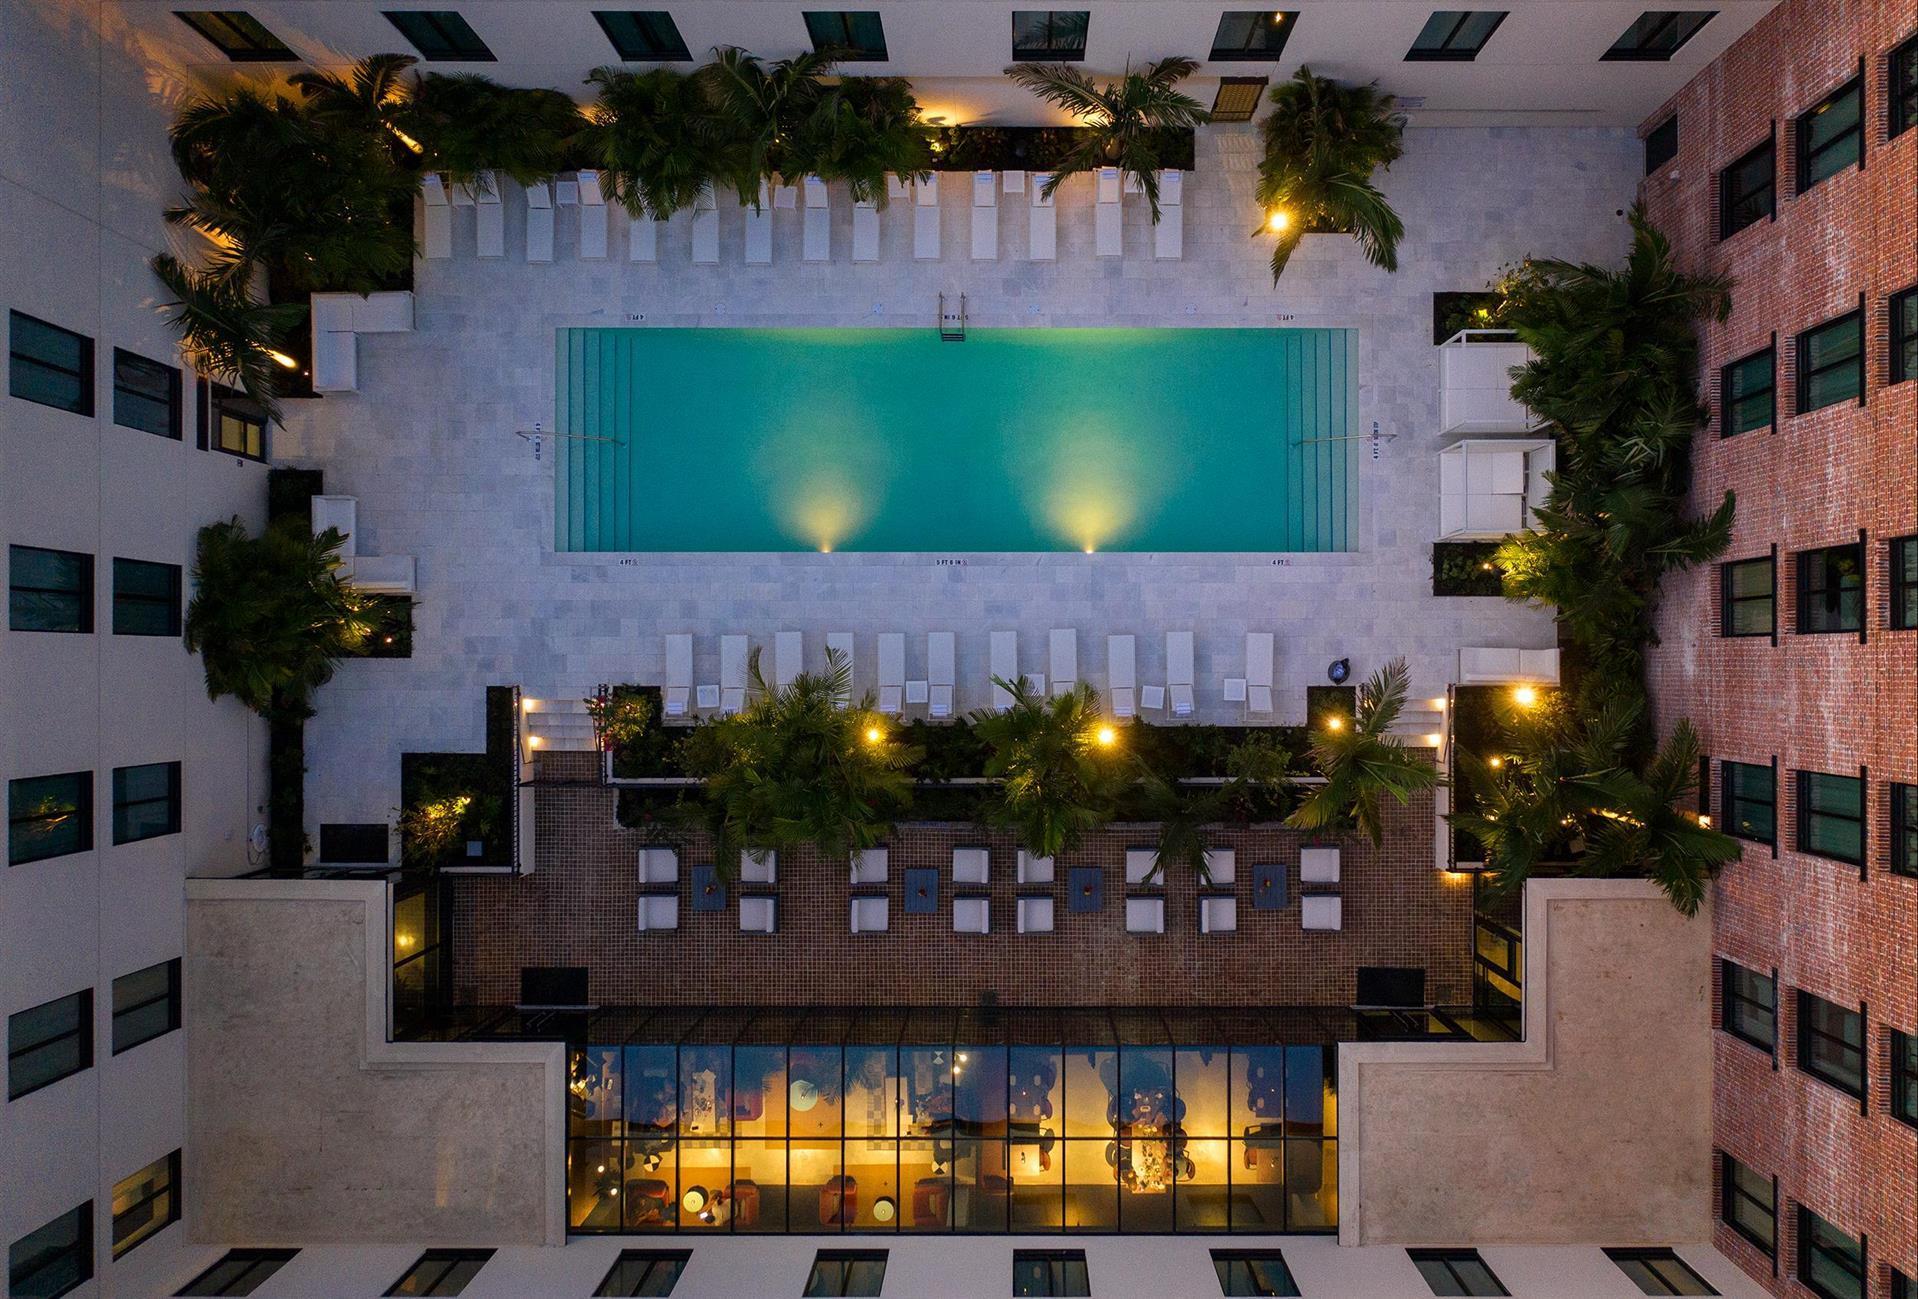 Hotel Haya in Tampa, FL